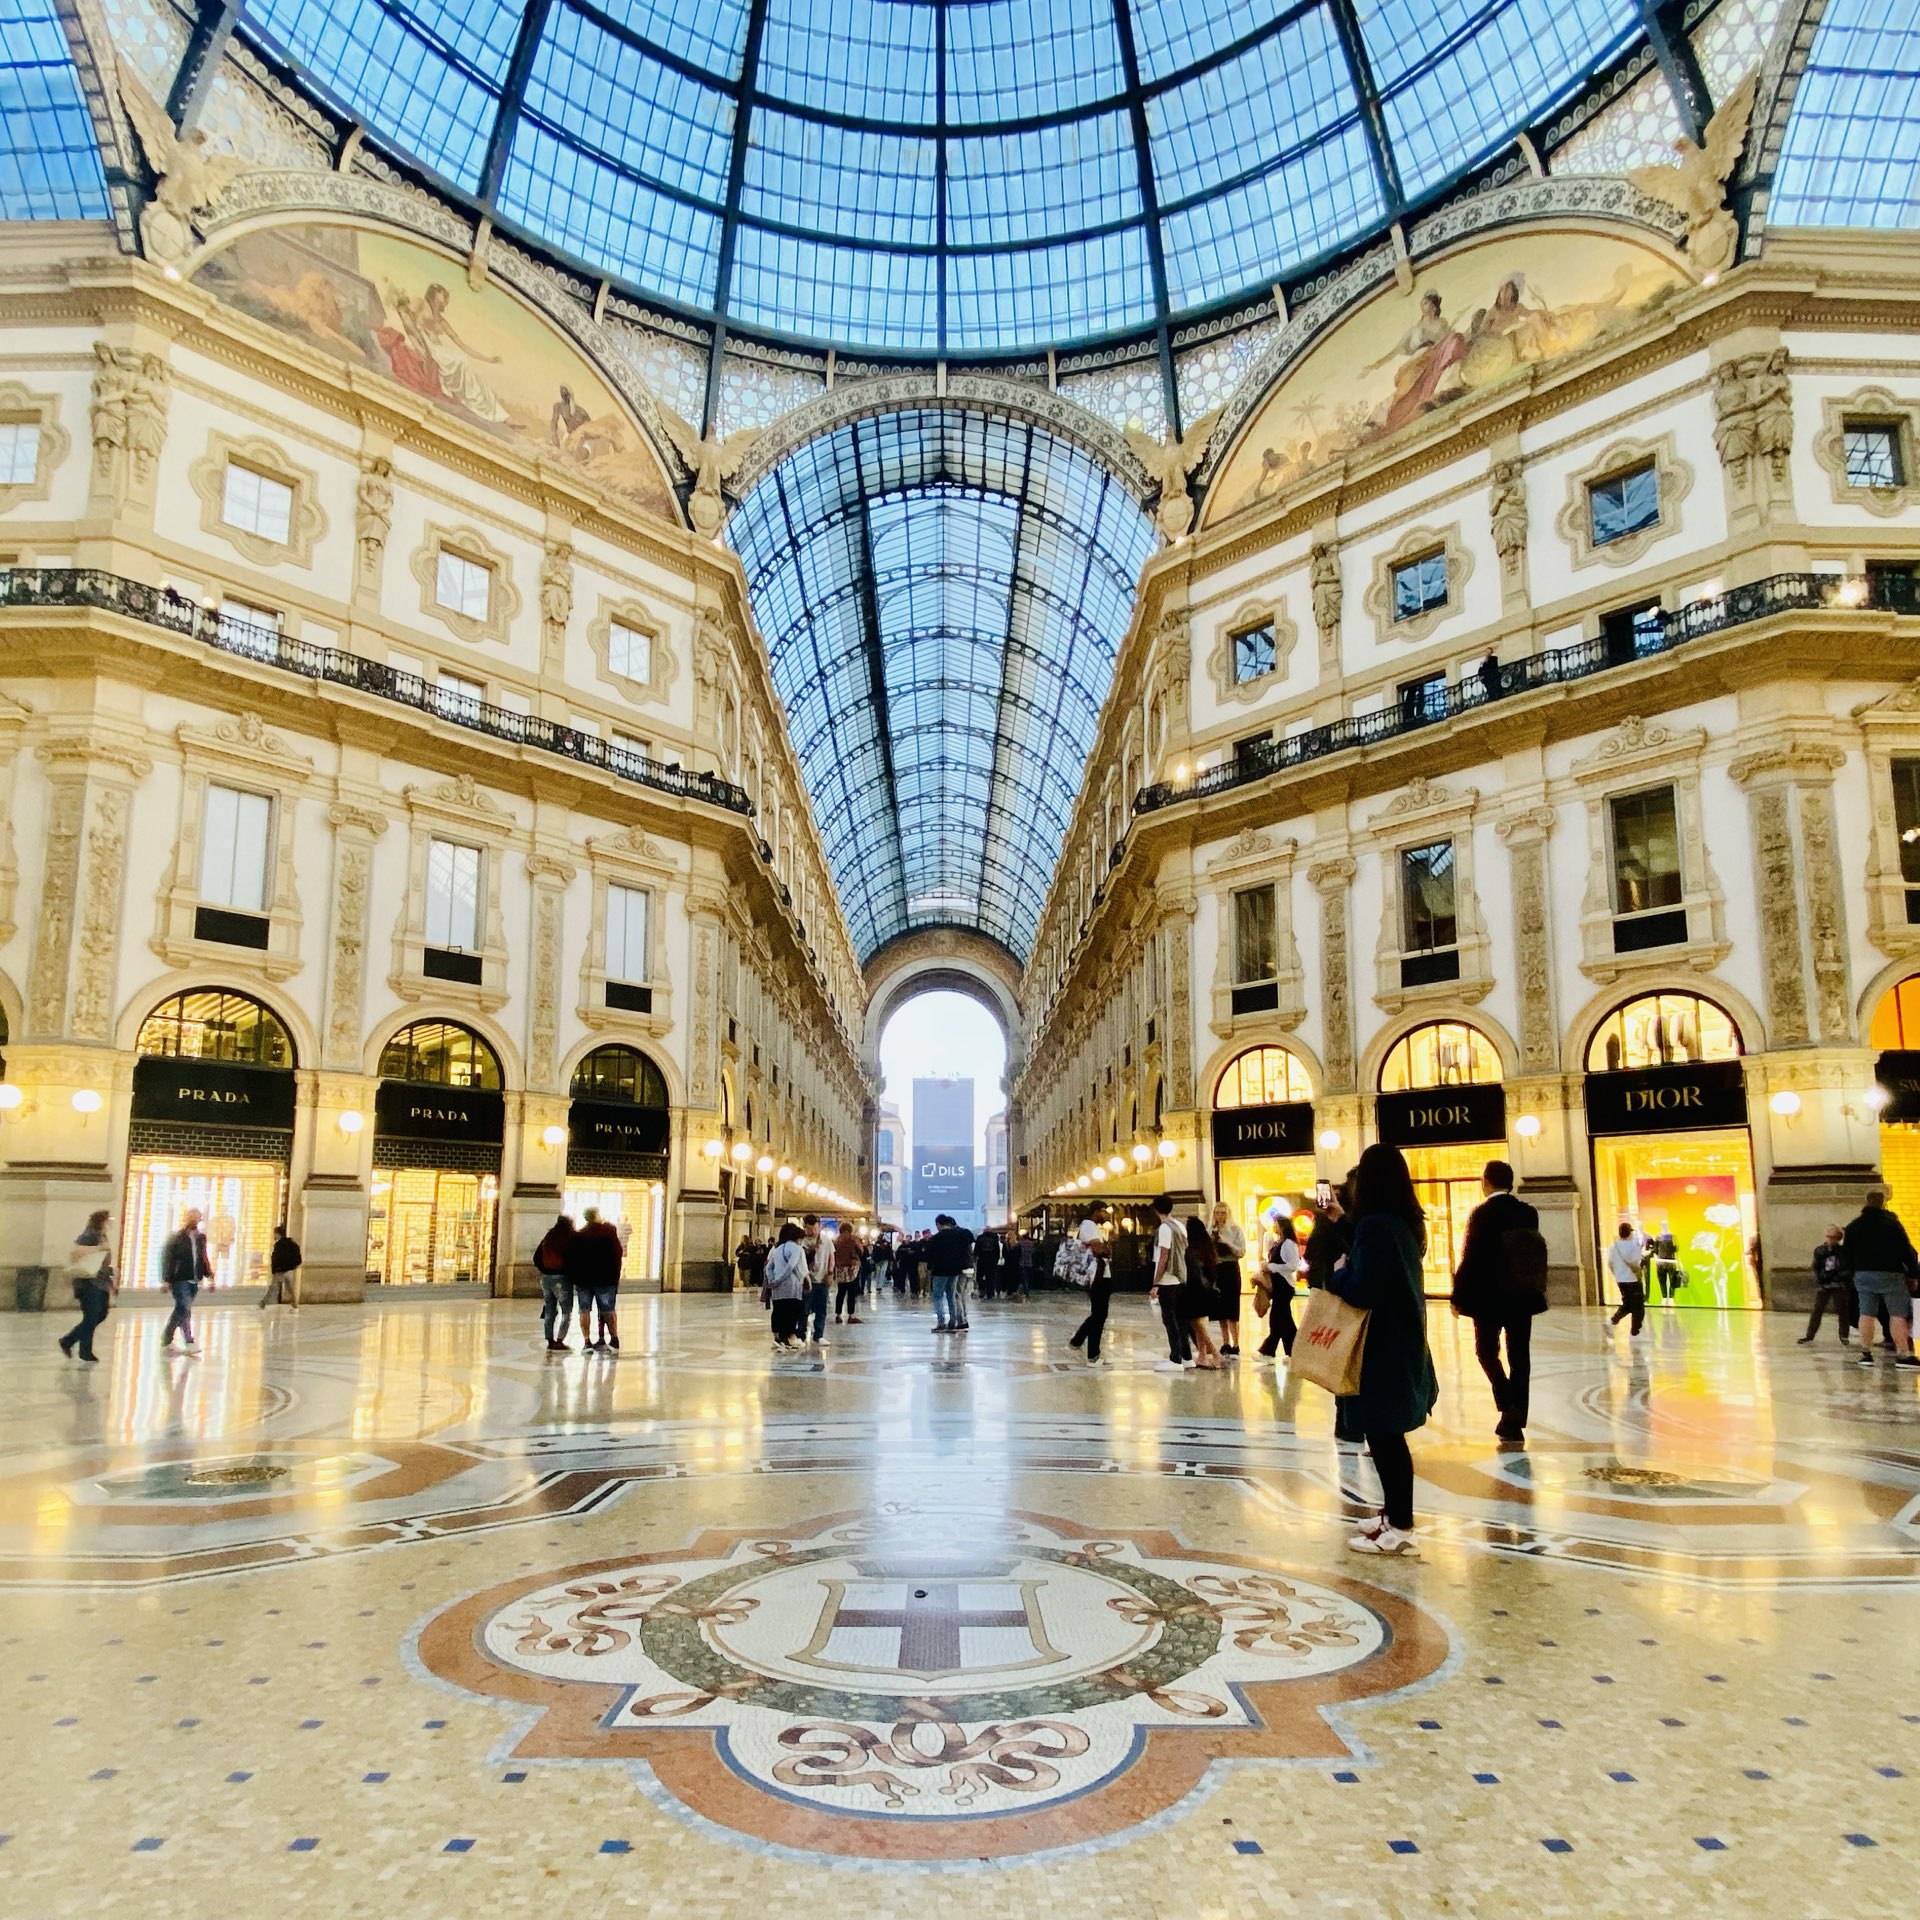 Shopping & Dining at Galleria Vittorio Emanuele II